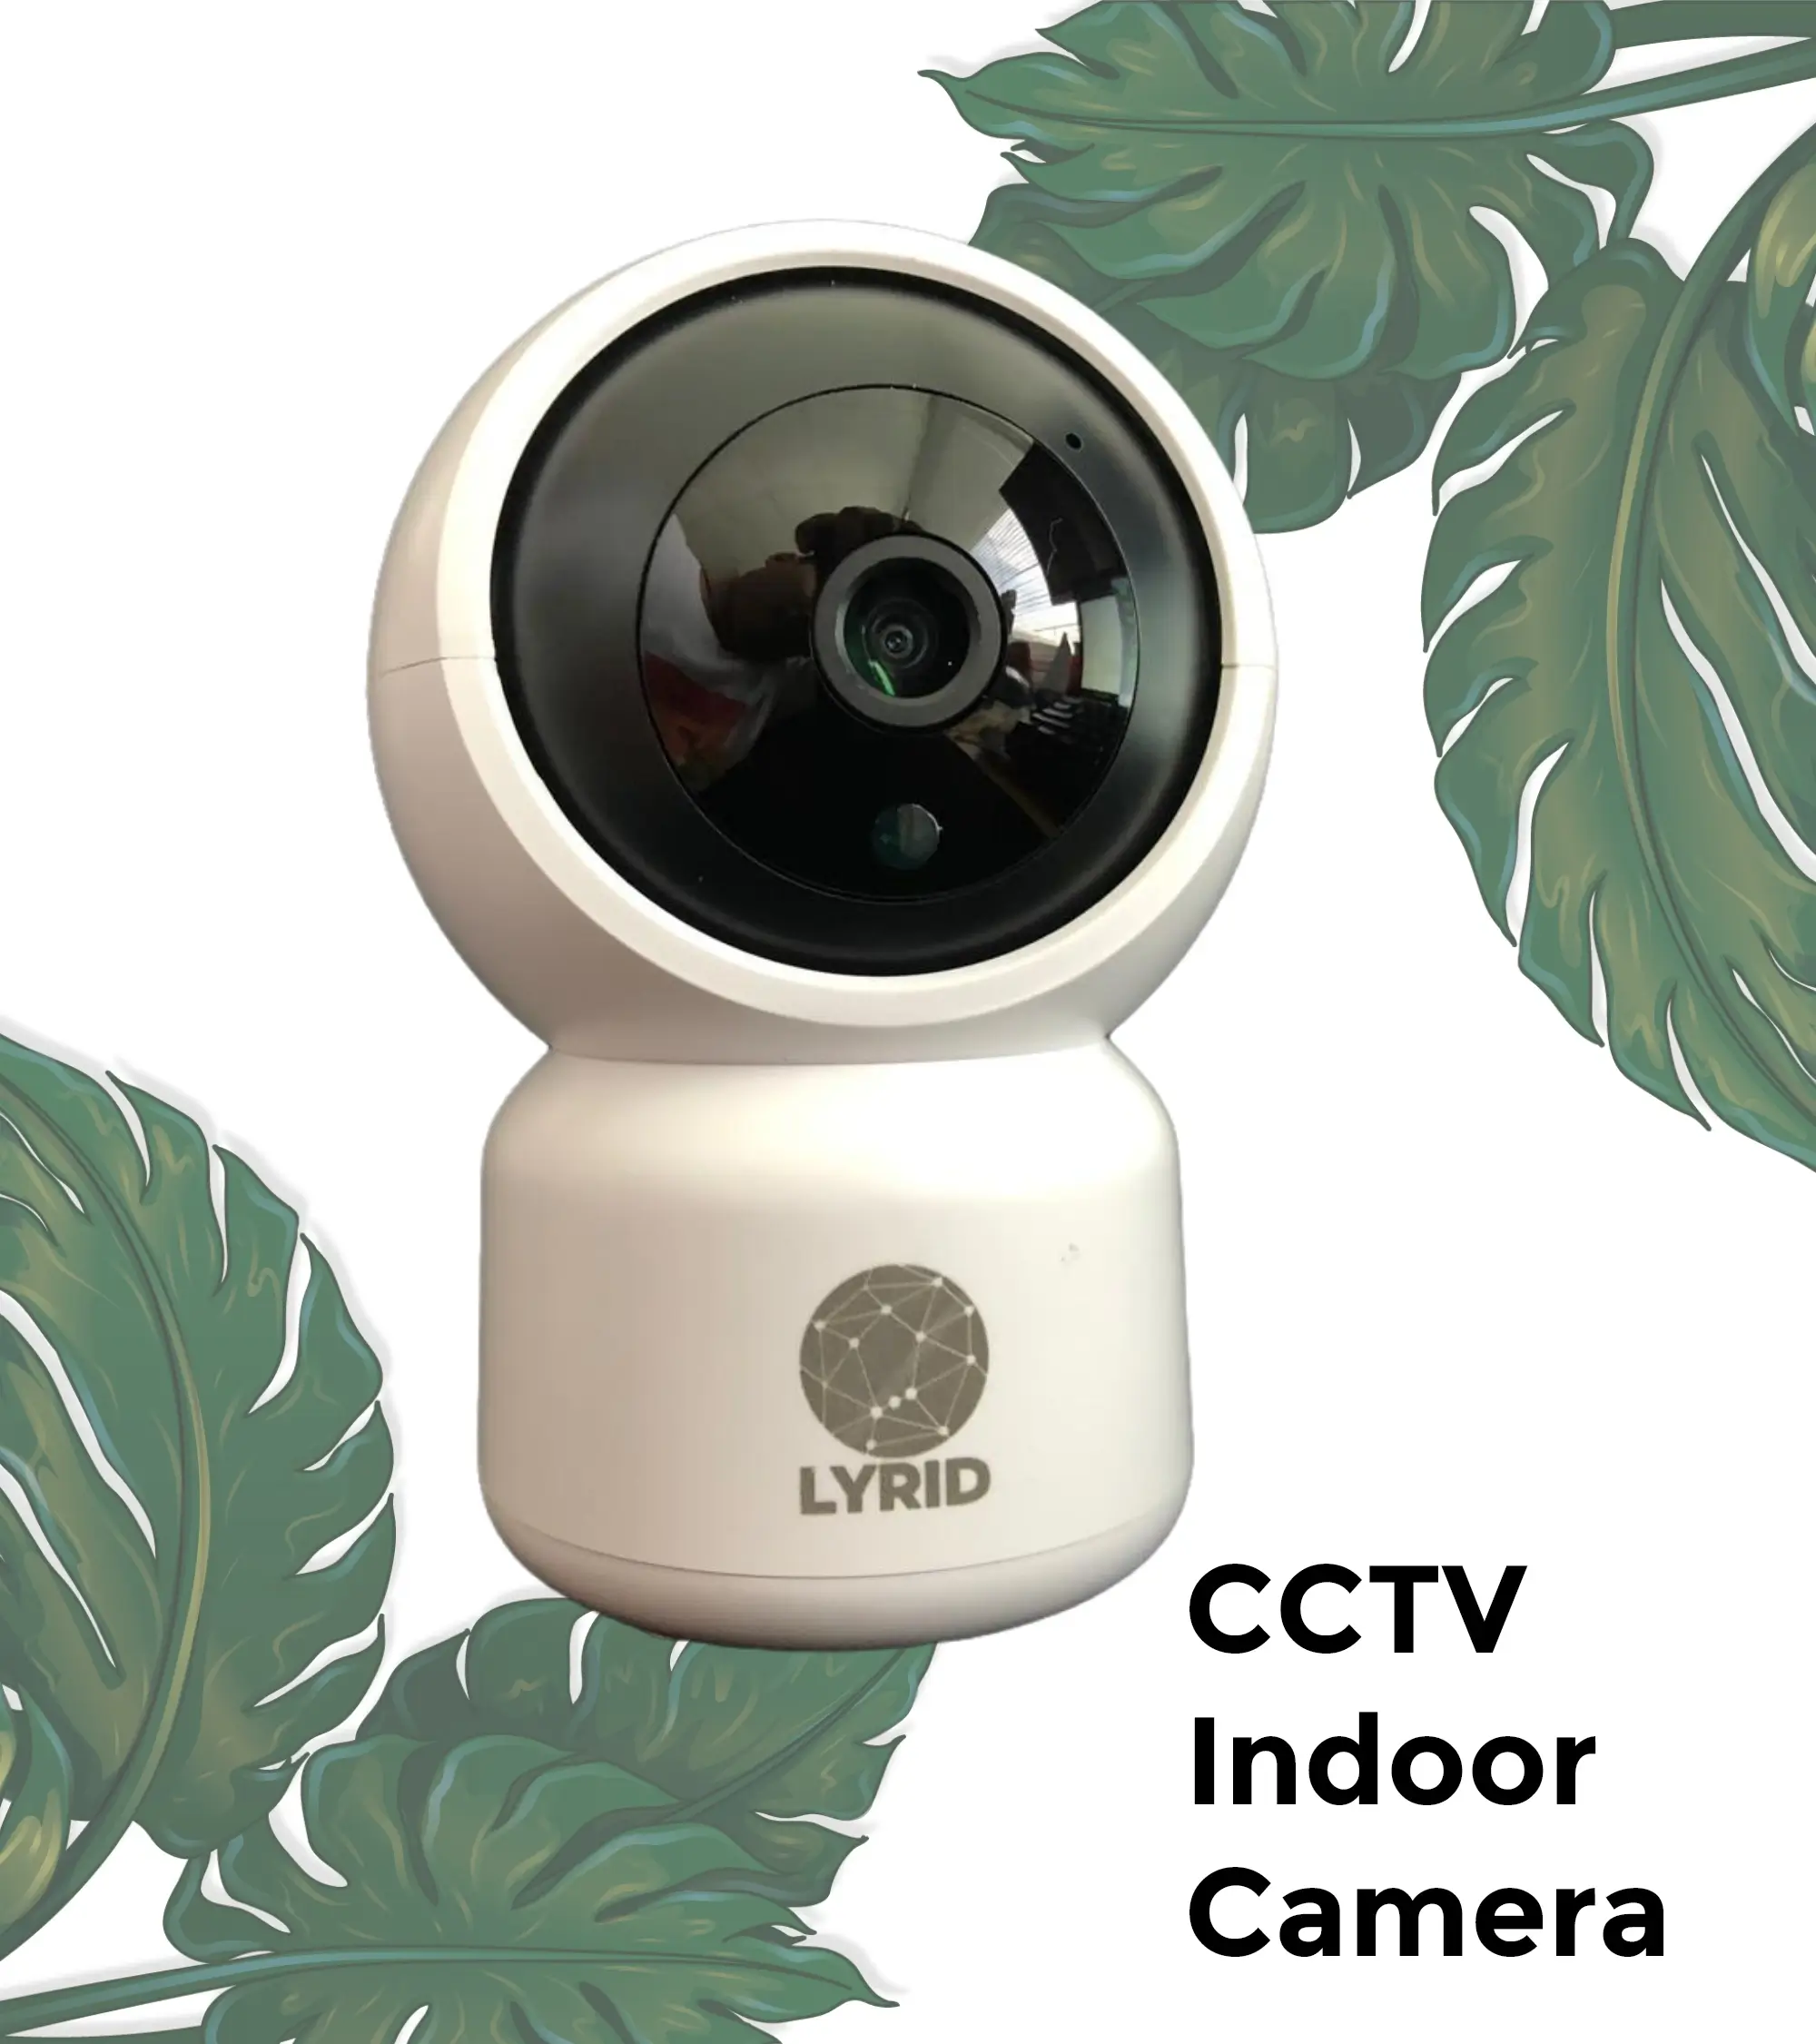 CCTV Indoor